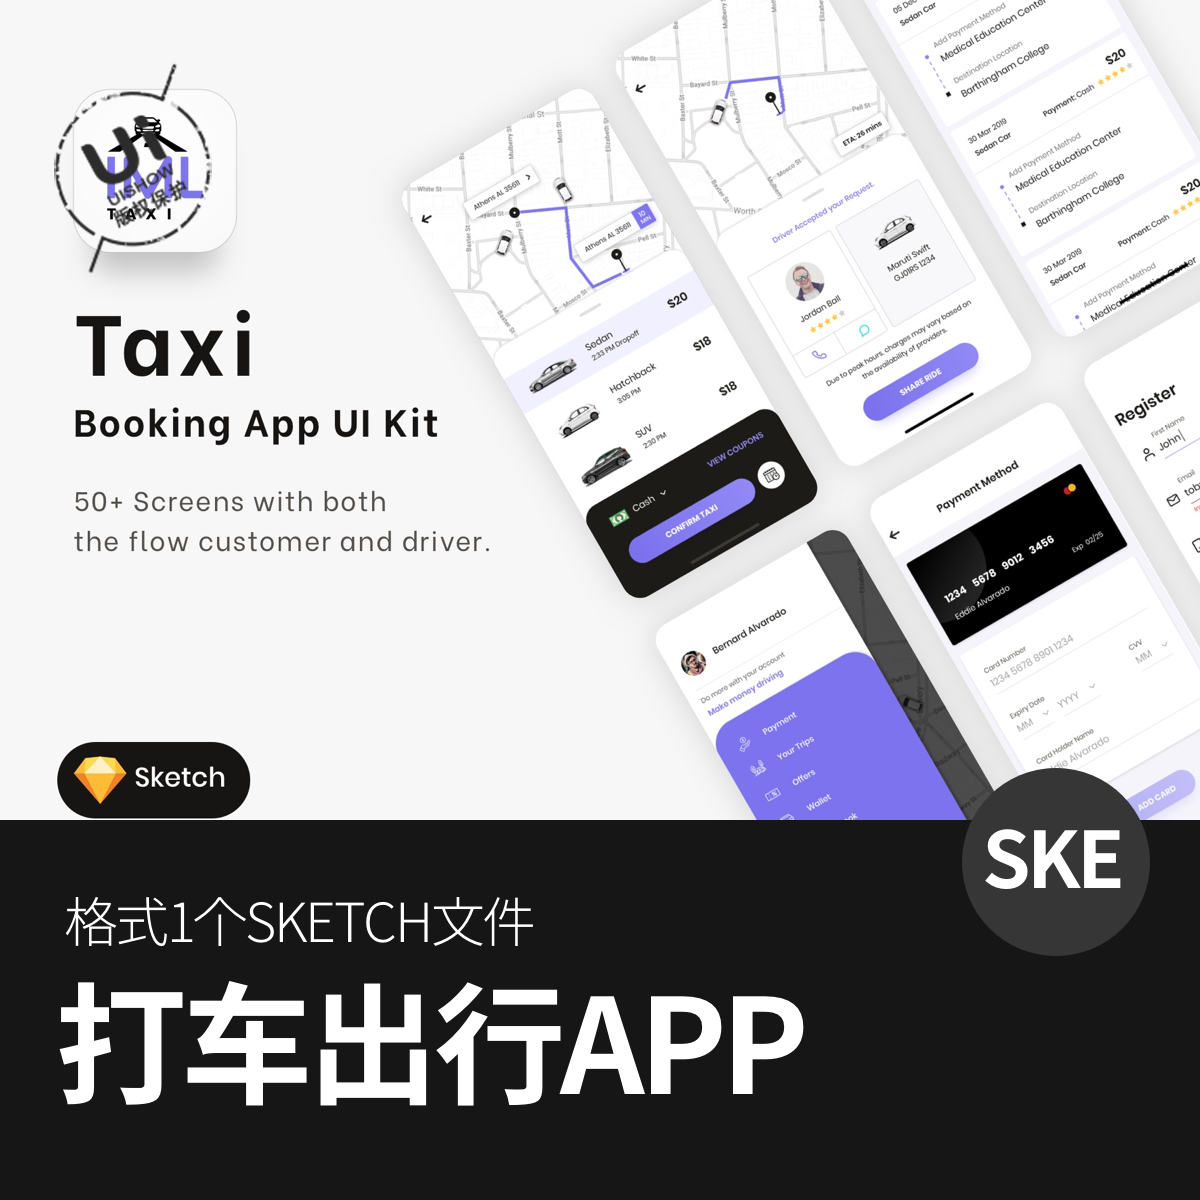 出租车预订打车出行共享汽车APP应用程序界面模板设计sketch素材